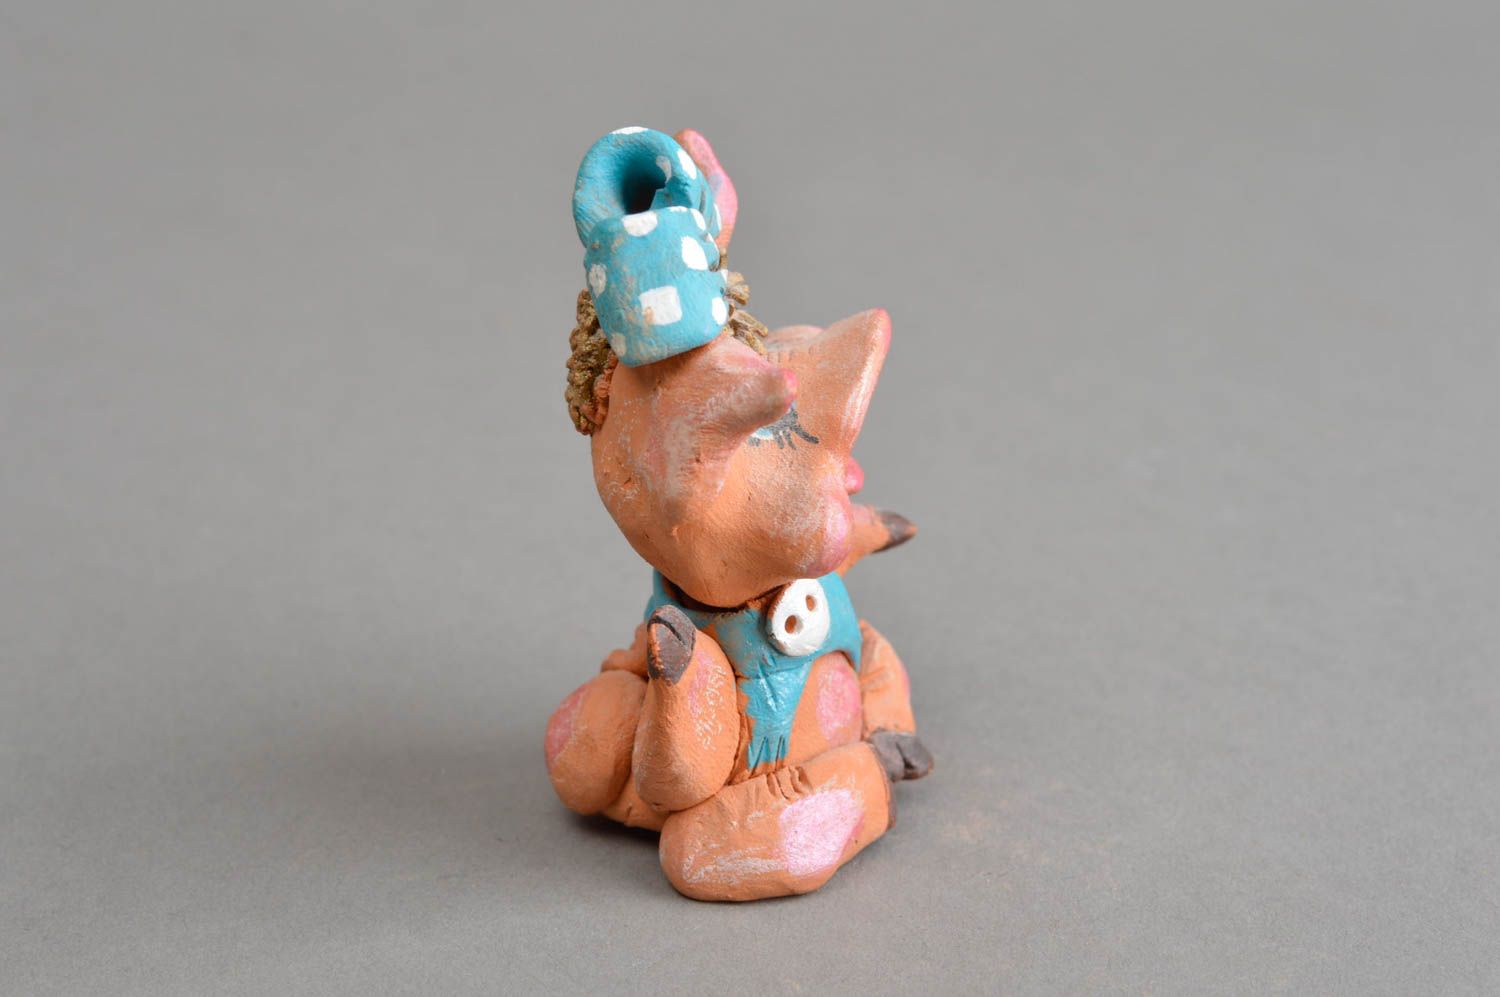 Авторский керамический сувенир ручной работы радостная свинка с голубым бантом фото 4